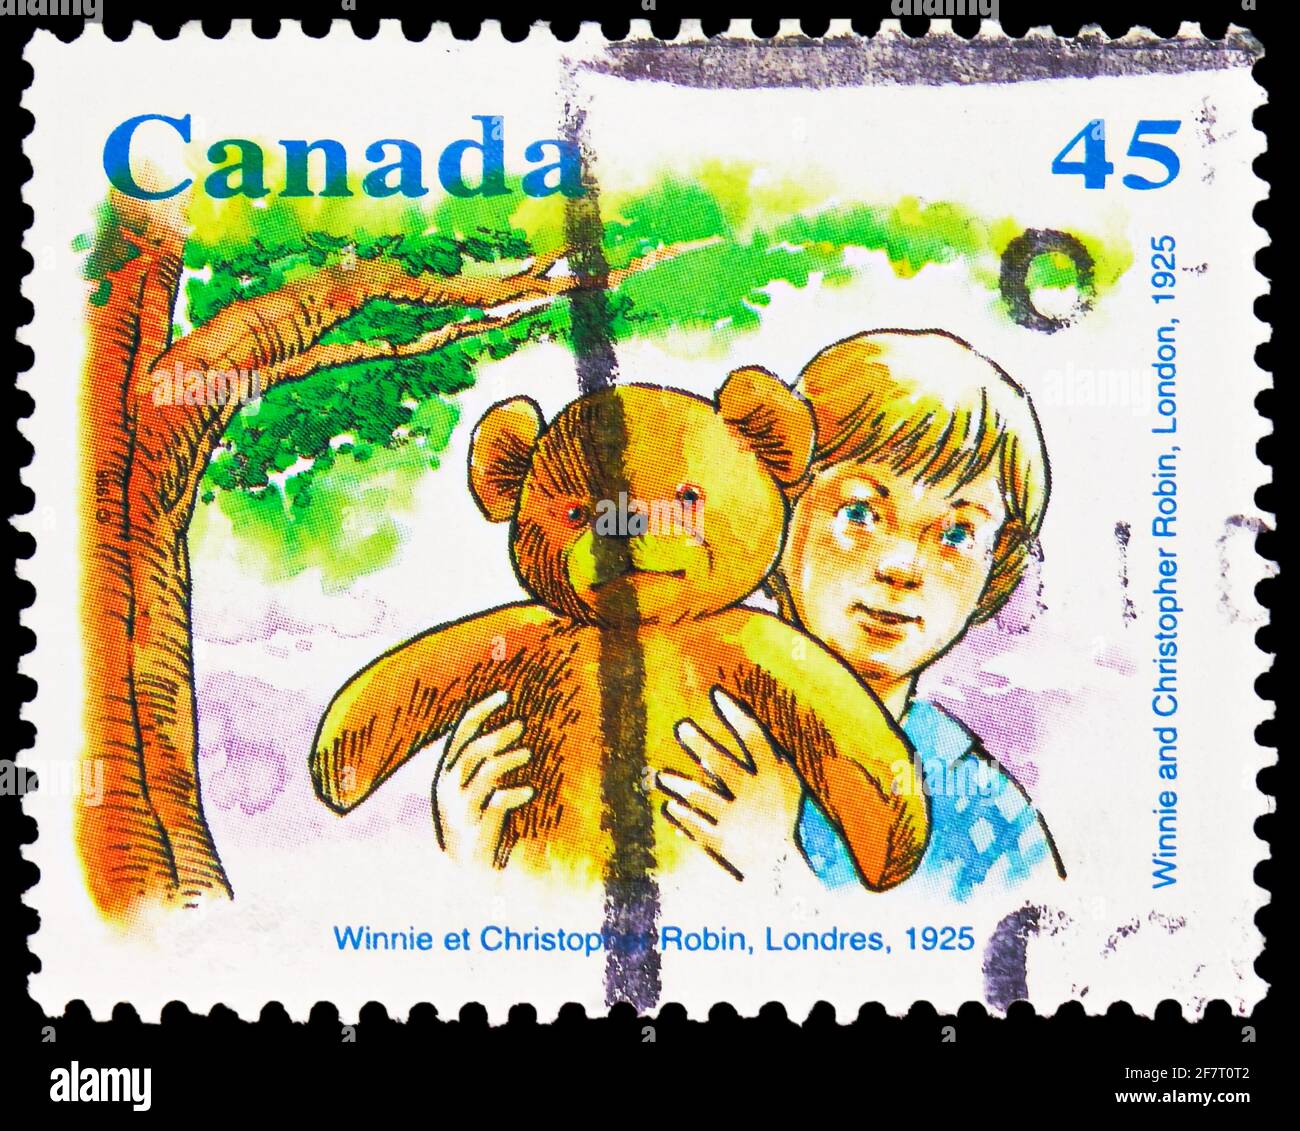 MOSCOU, RUSSIE - le 17 JANVIER 2021 : le timbre-poste imprimé au Canada montre Winnie et Christopher Robin, Londres, 1925, série Winnie l'ourson, vers 1996 Banque D'Images